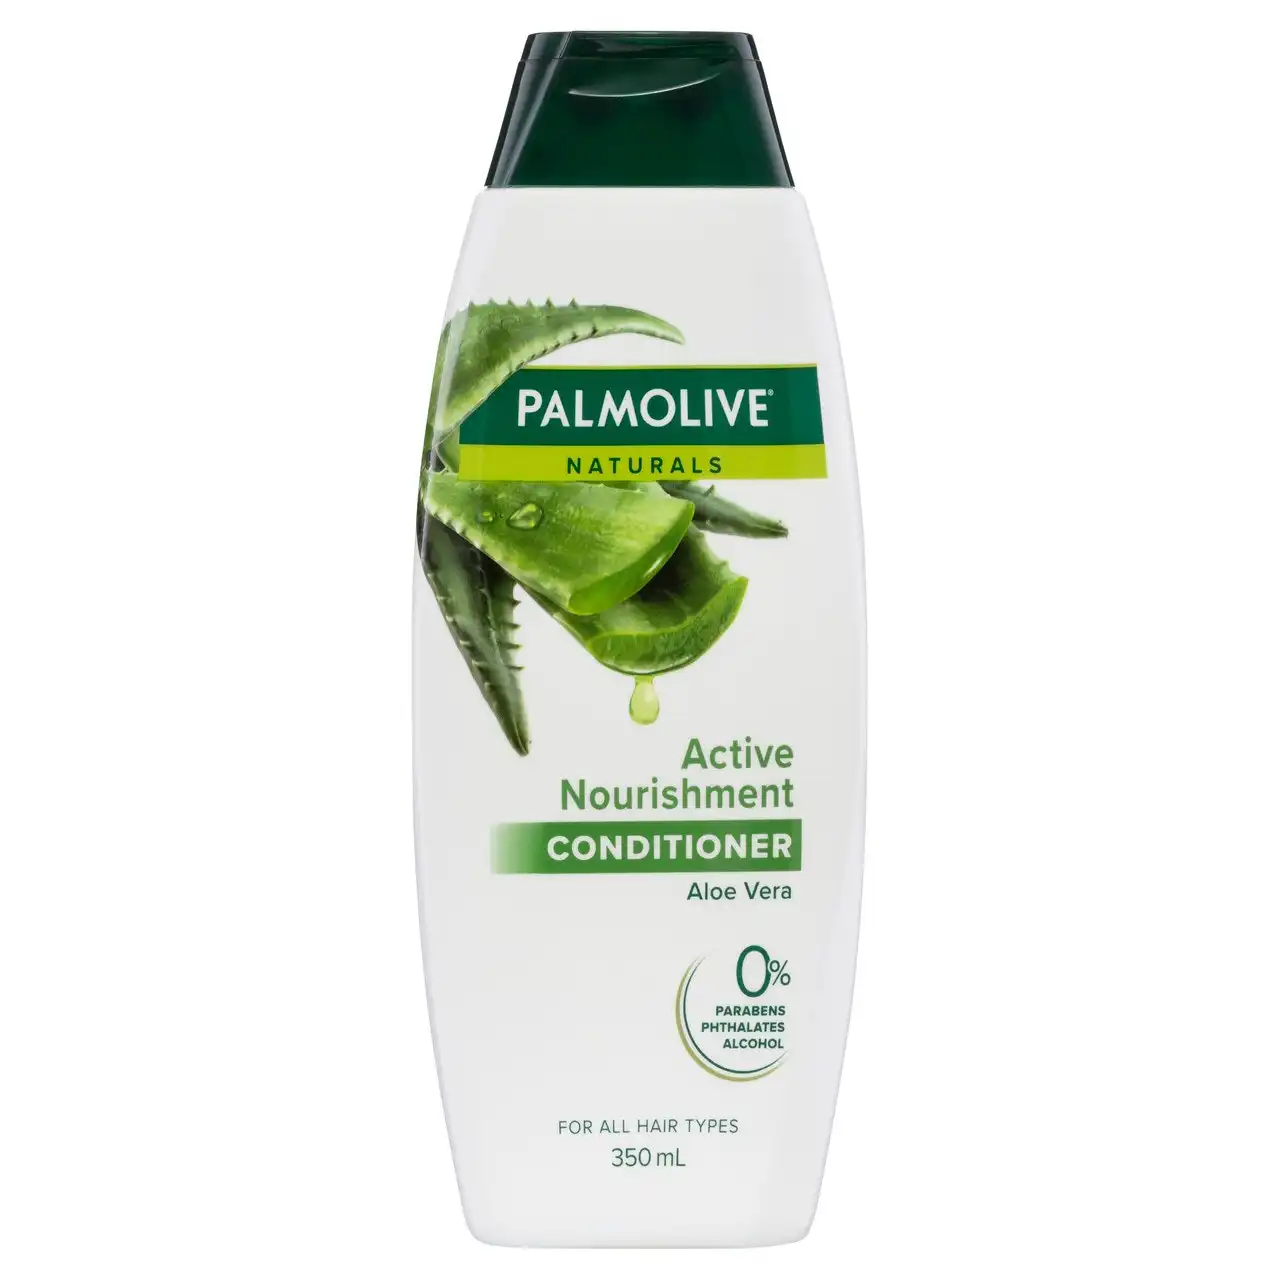 Palmolive Naturals Active Nourishment Conditioner Aloe Vera 350mL